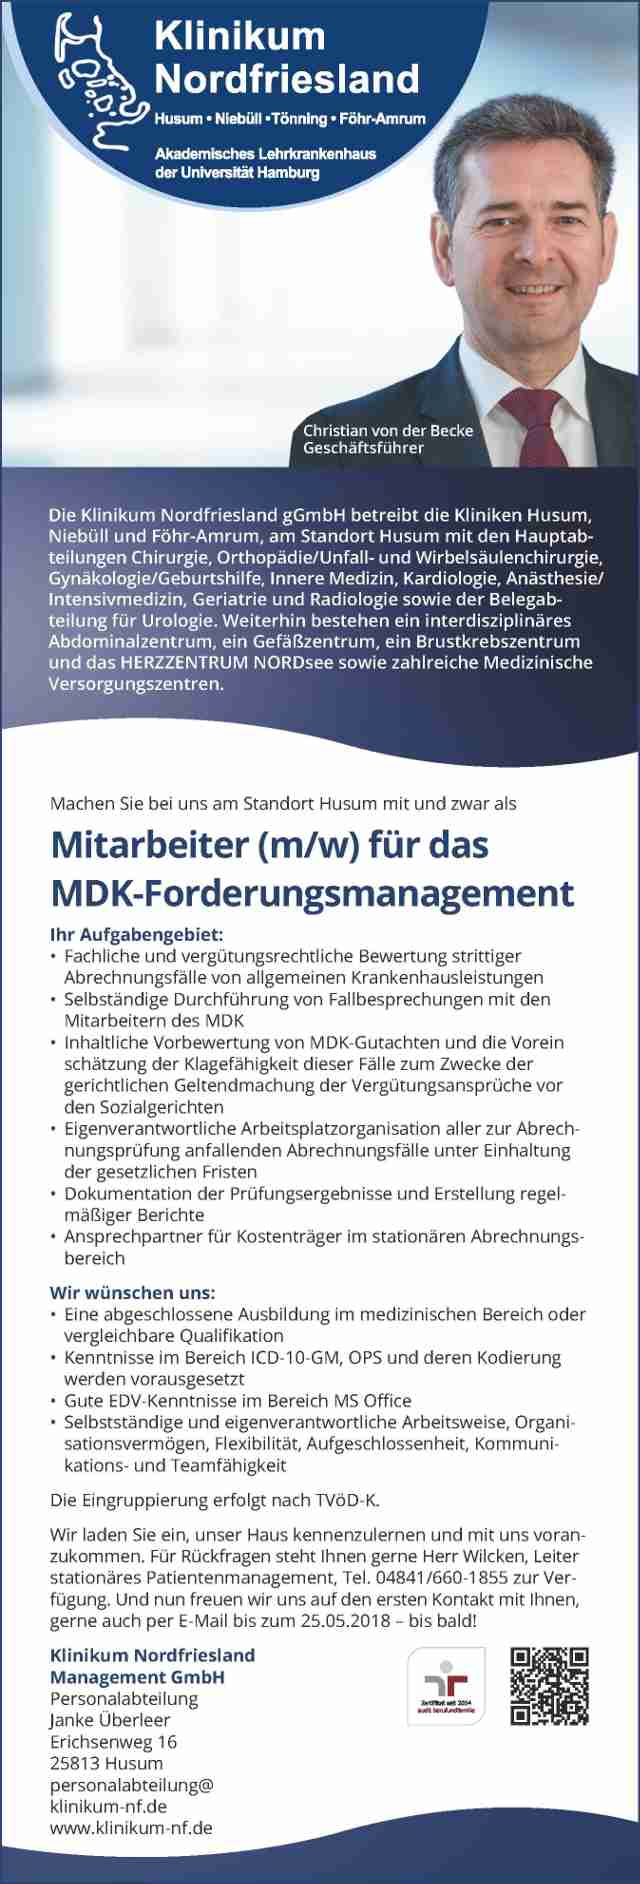 Klinikum Nordfriesland gGmbH, Husum: Mitarbeiter MDK-Forderungsmanagement (m/w)